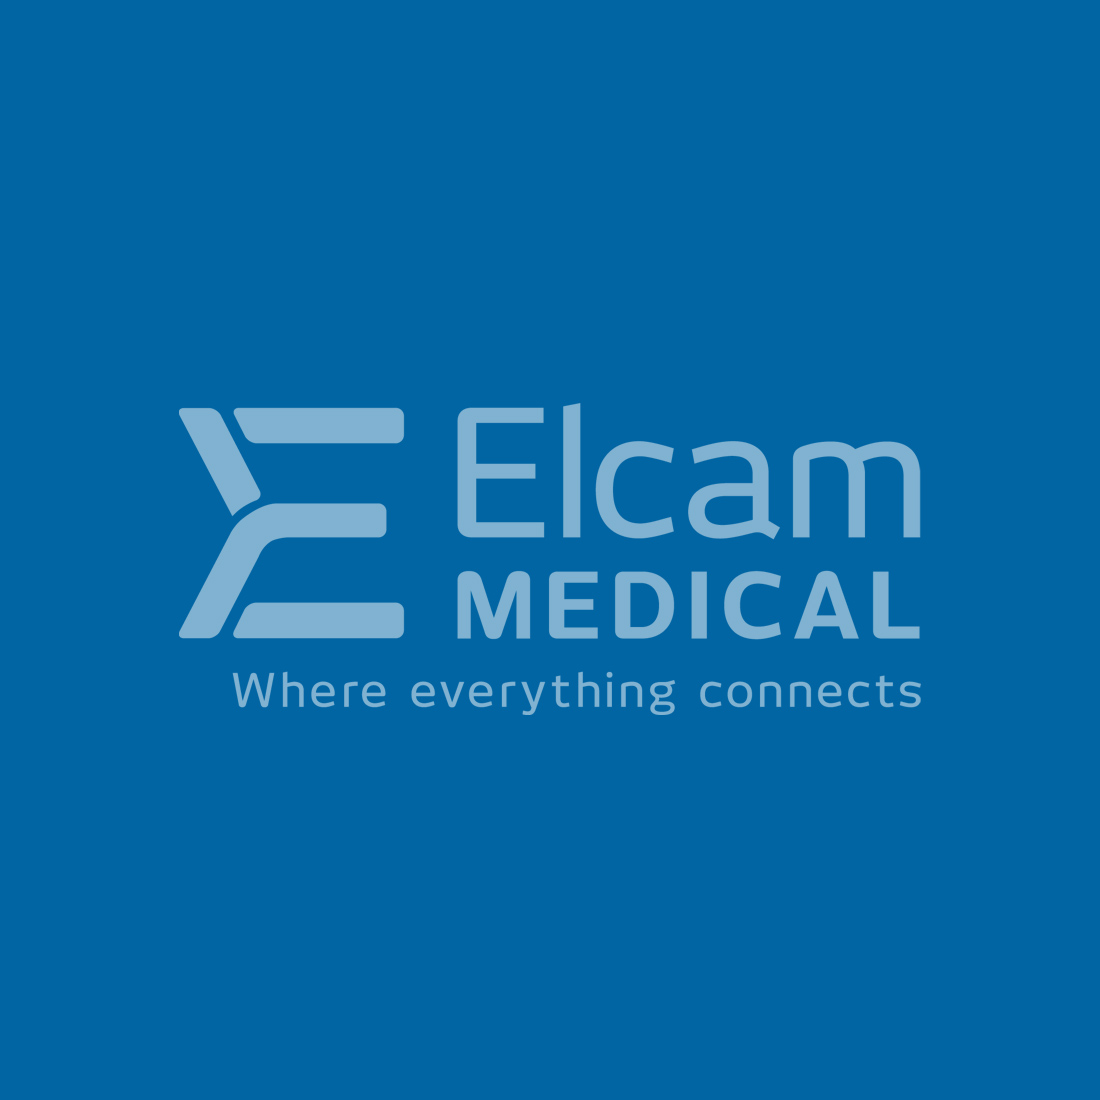 Elcam Medical design